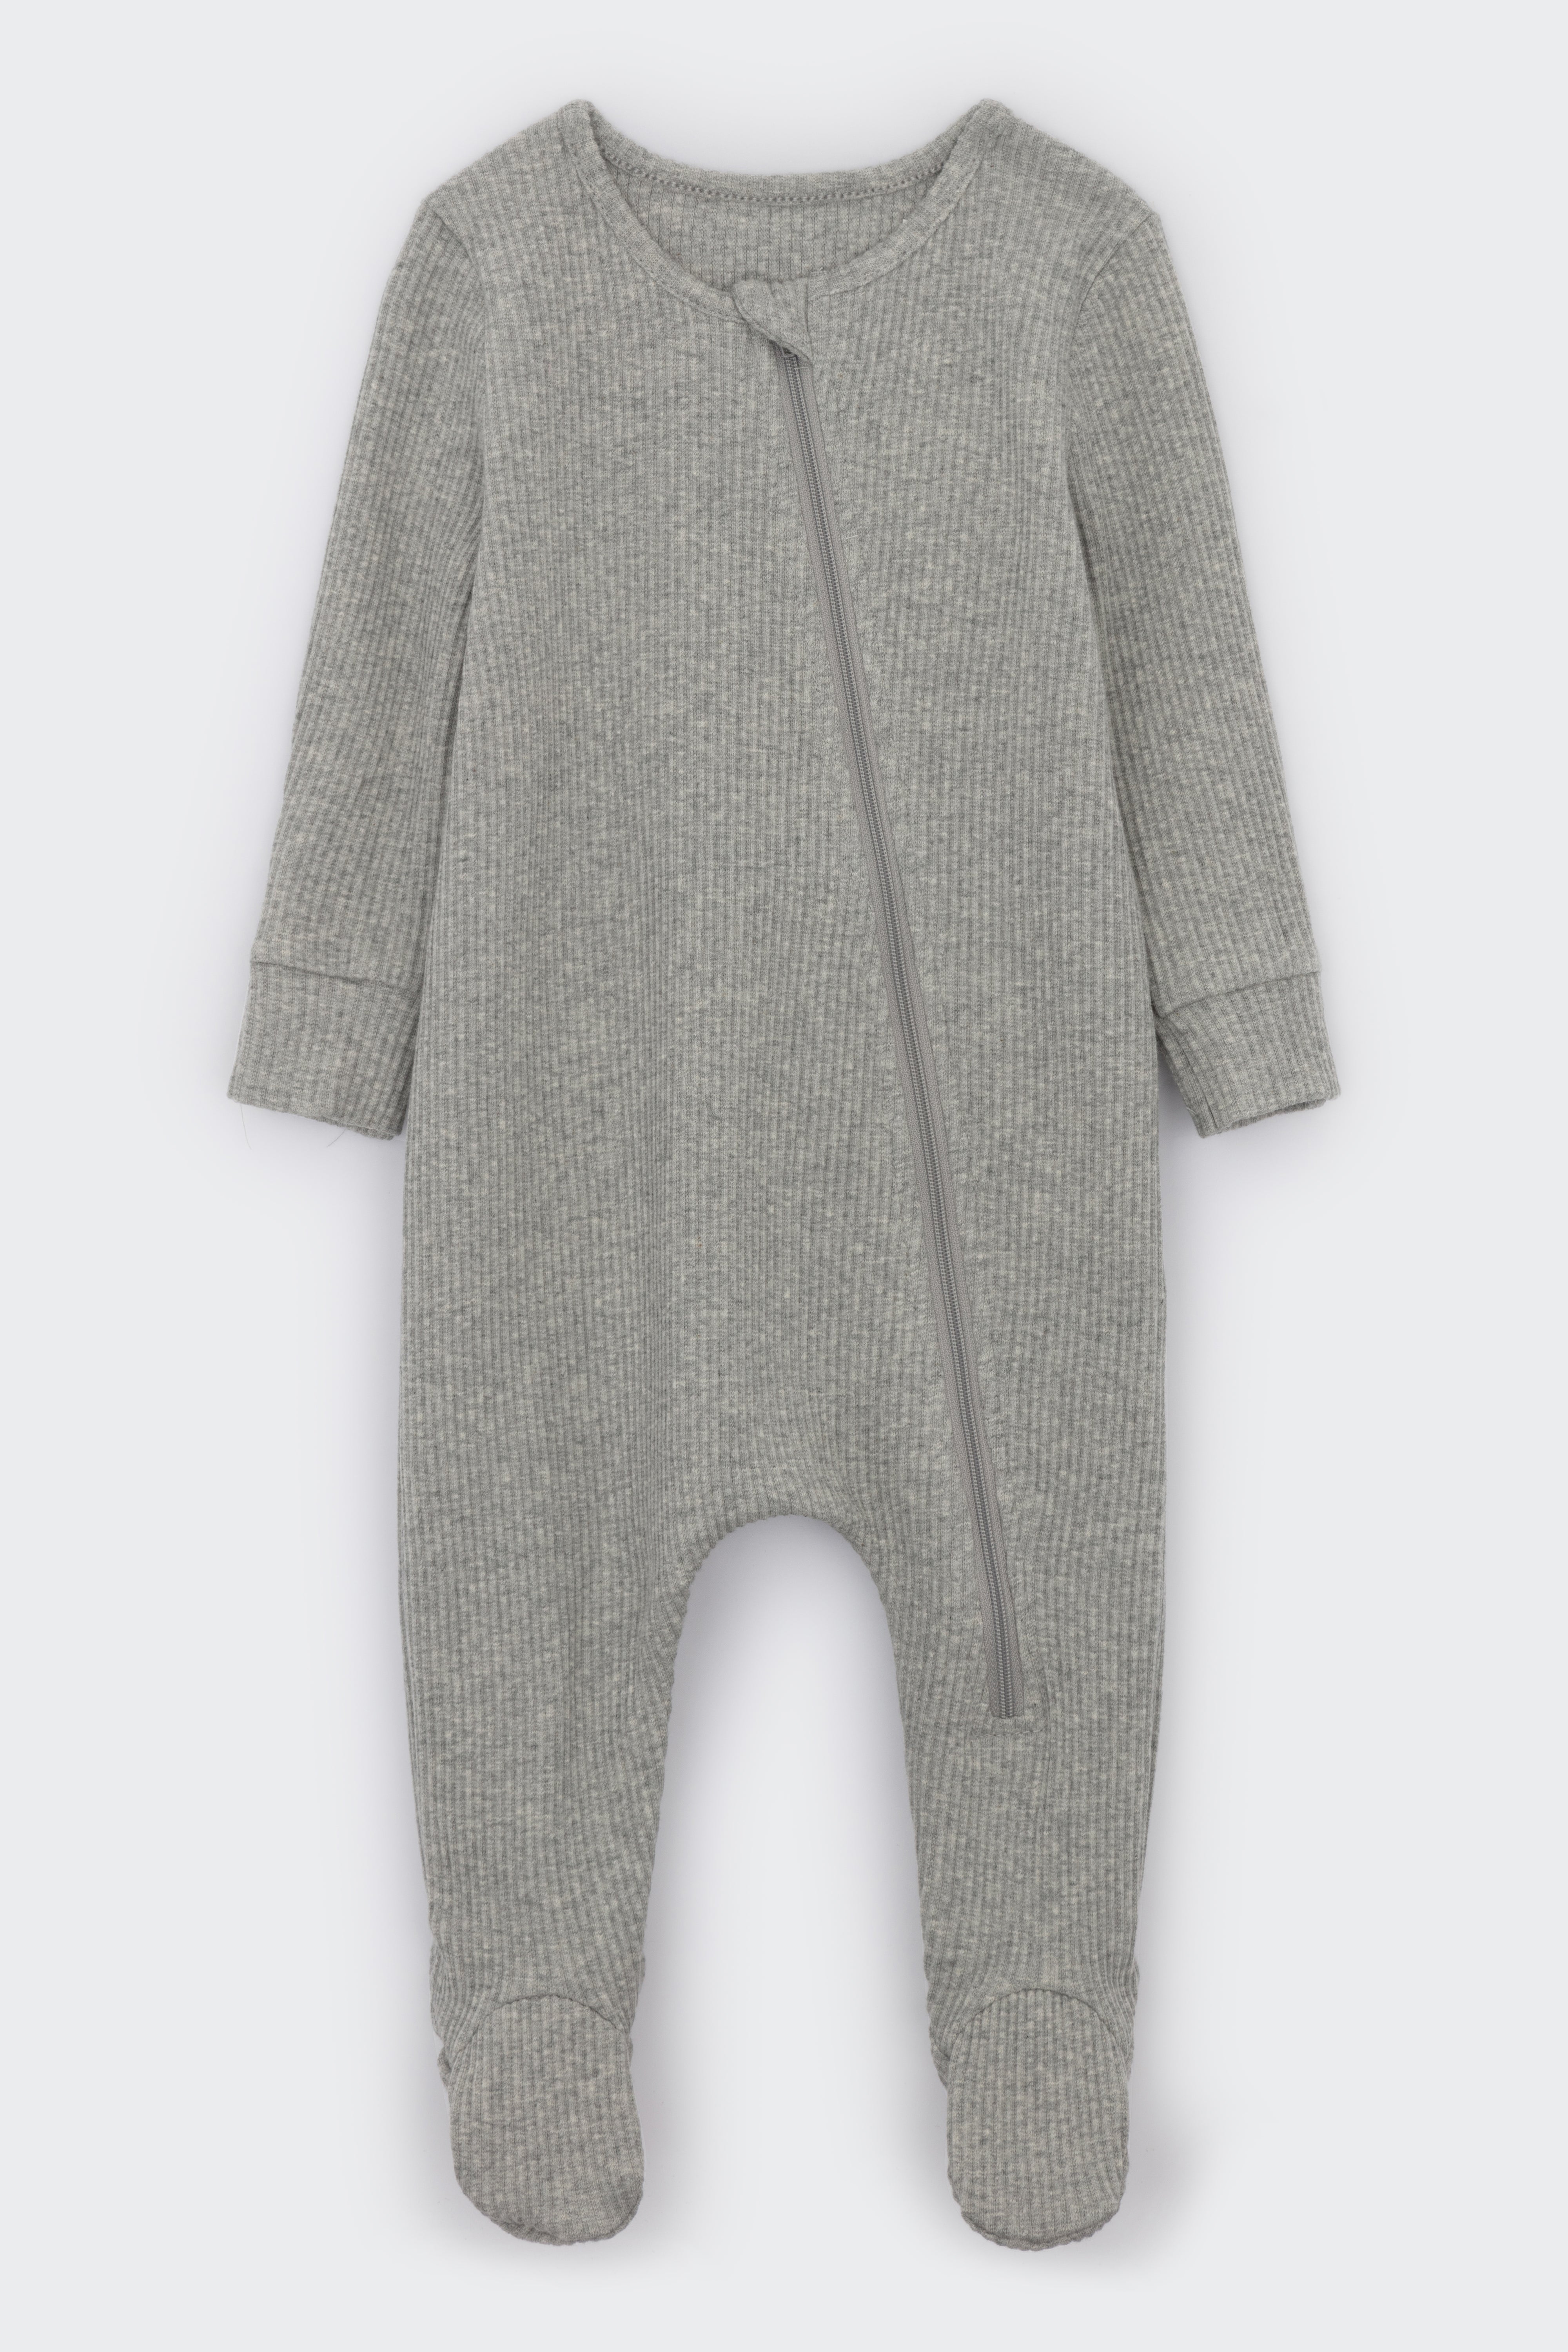 Dove Grey Zip Sleepsuit DreamBuy